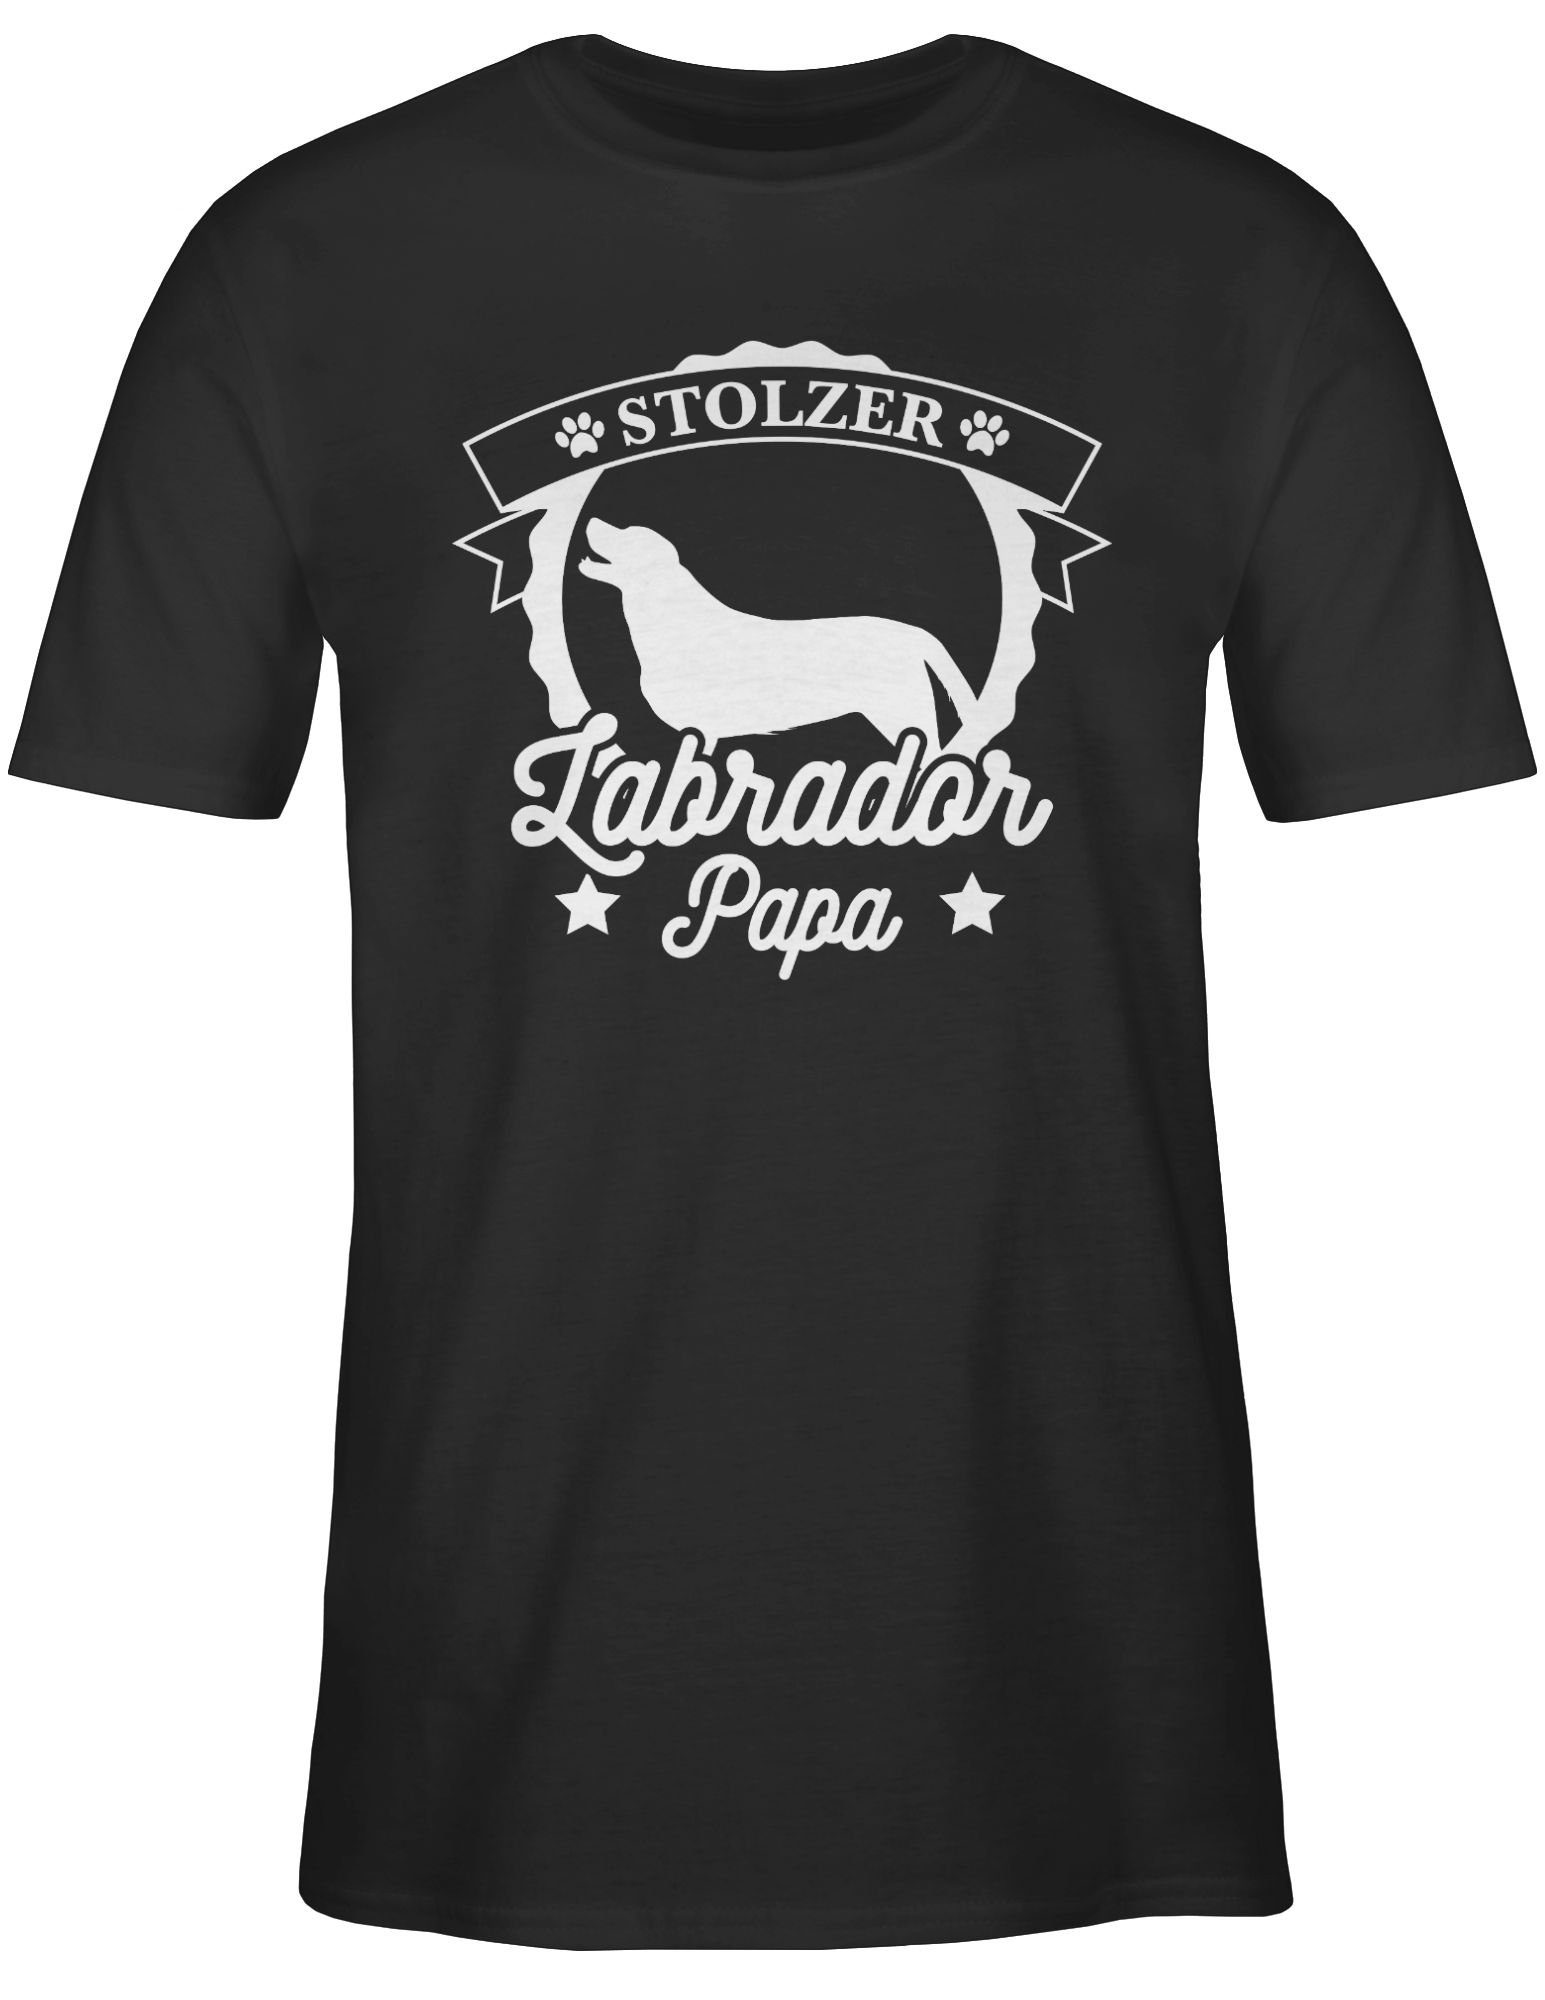 für Hundebesitzer Schwarz Stolzer Shirtracer Geschenk Papa T-Shirt 1 Labrador